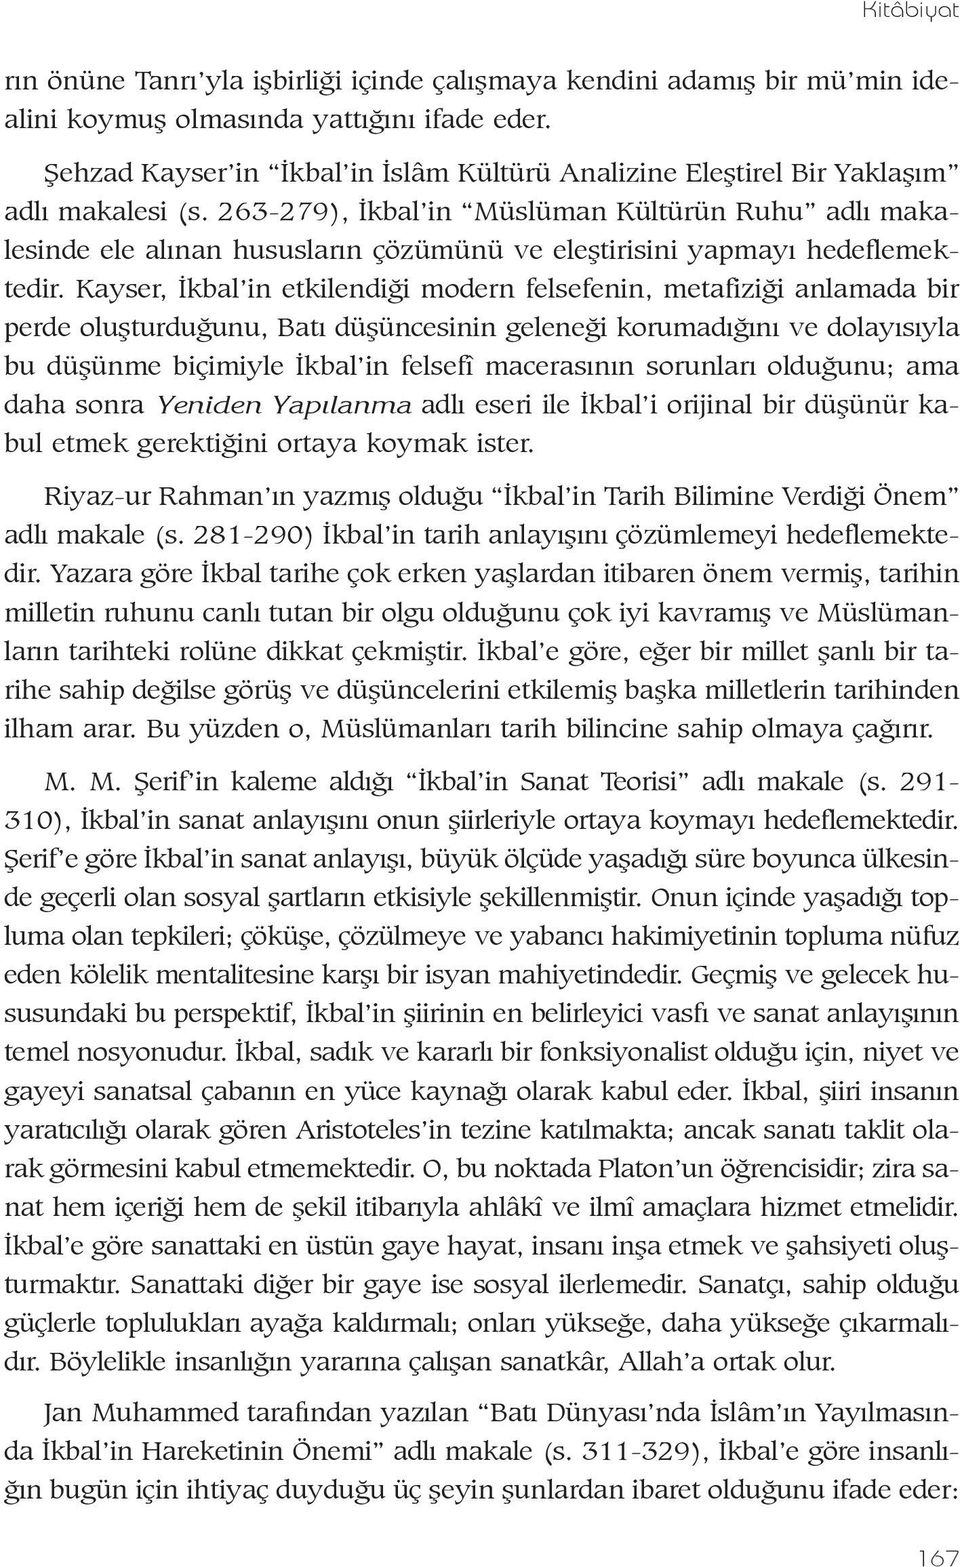 263-279), Ýkbal in Müslüman Kültürün Ruhu adlý makalesinde ele alýnan hususlarýn çözümünü ve eleþtirisini yapmayý hedeflemektedir.